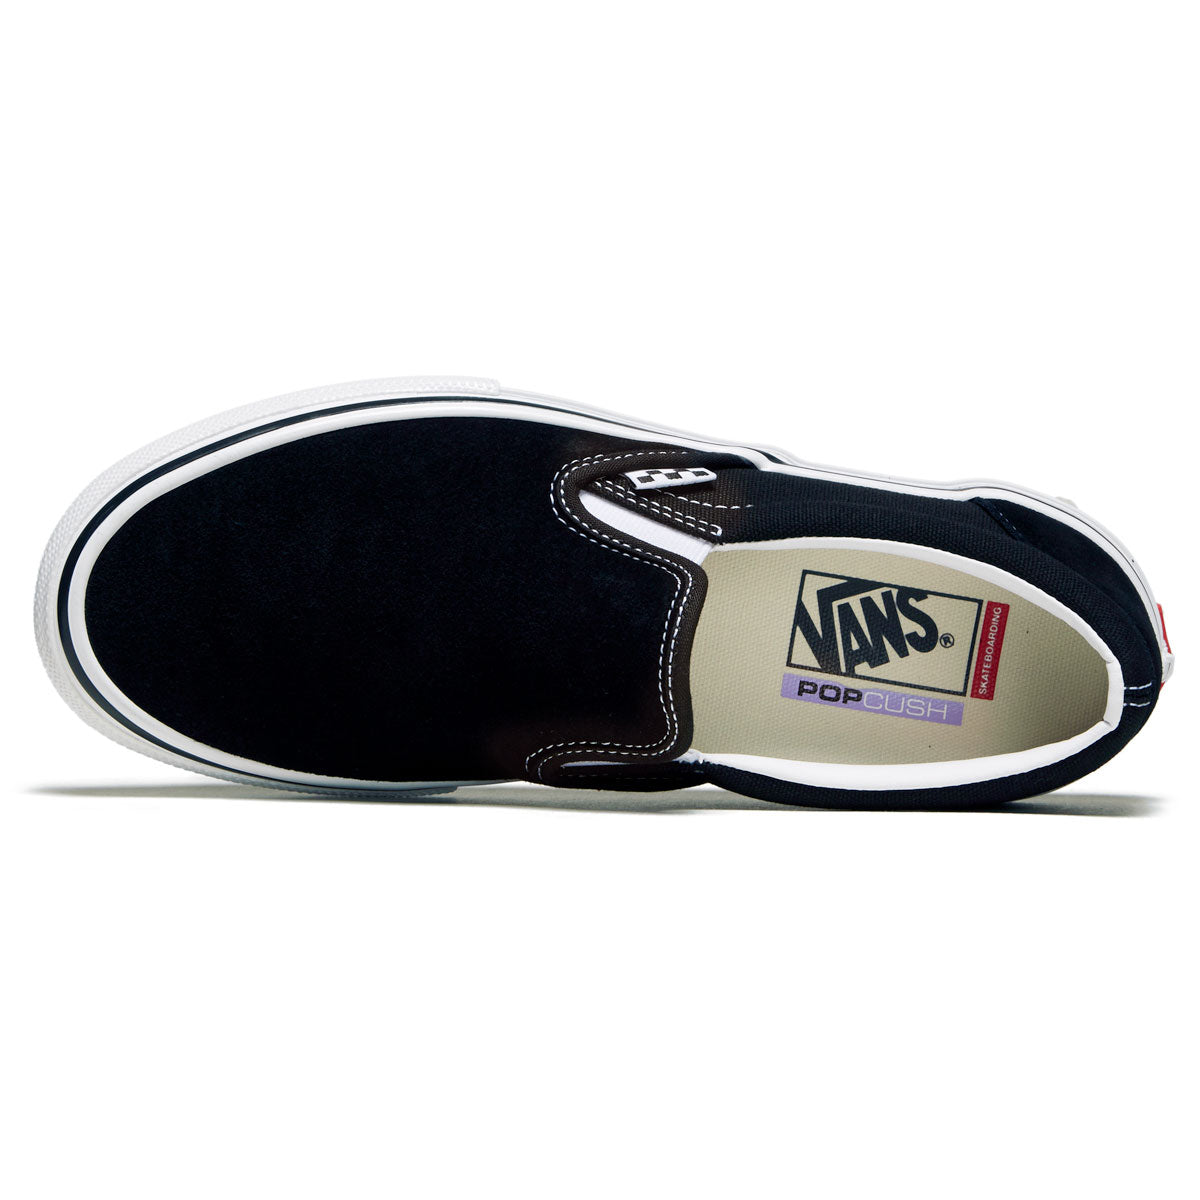 Vans Skate Slip-on Shoes - Black/White image 3